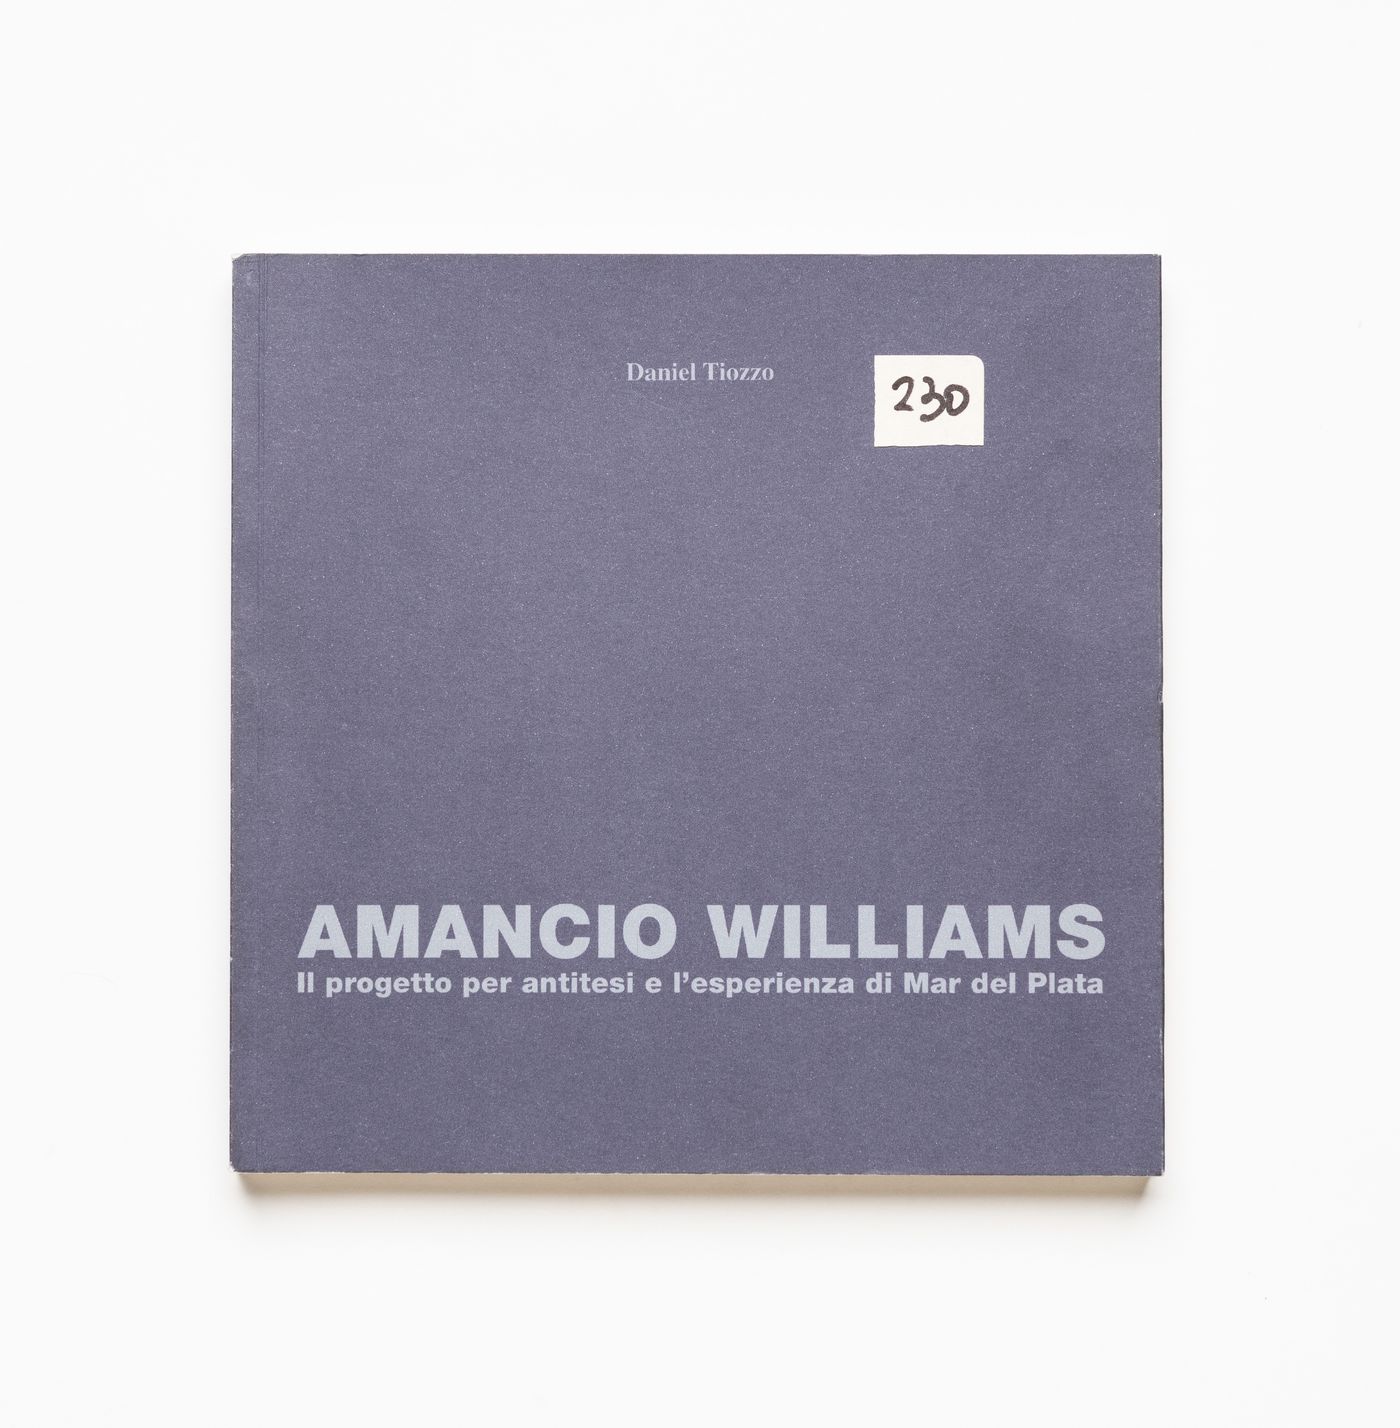 Book "Amancio Williams: Il progetto per antitesi e l'esperienza di Mar del Plata" by Daniel Tiozzo